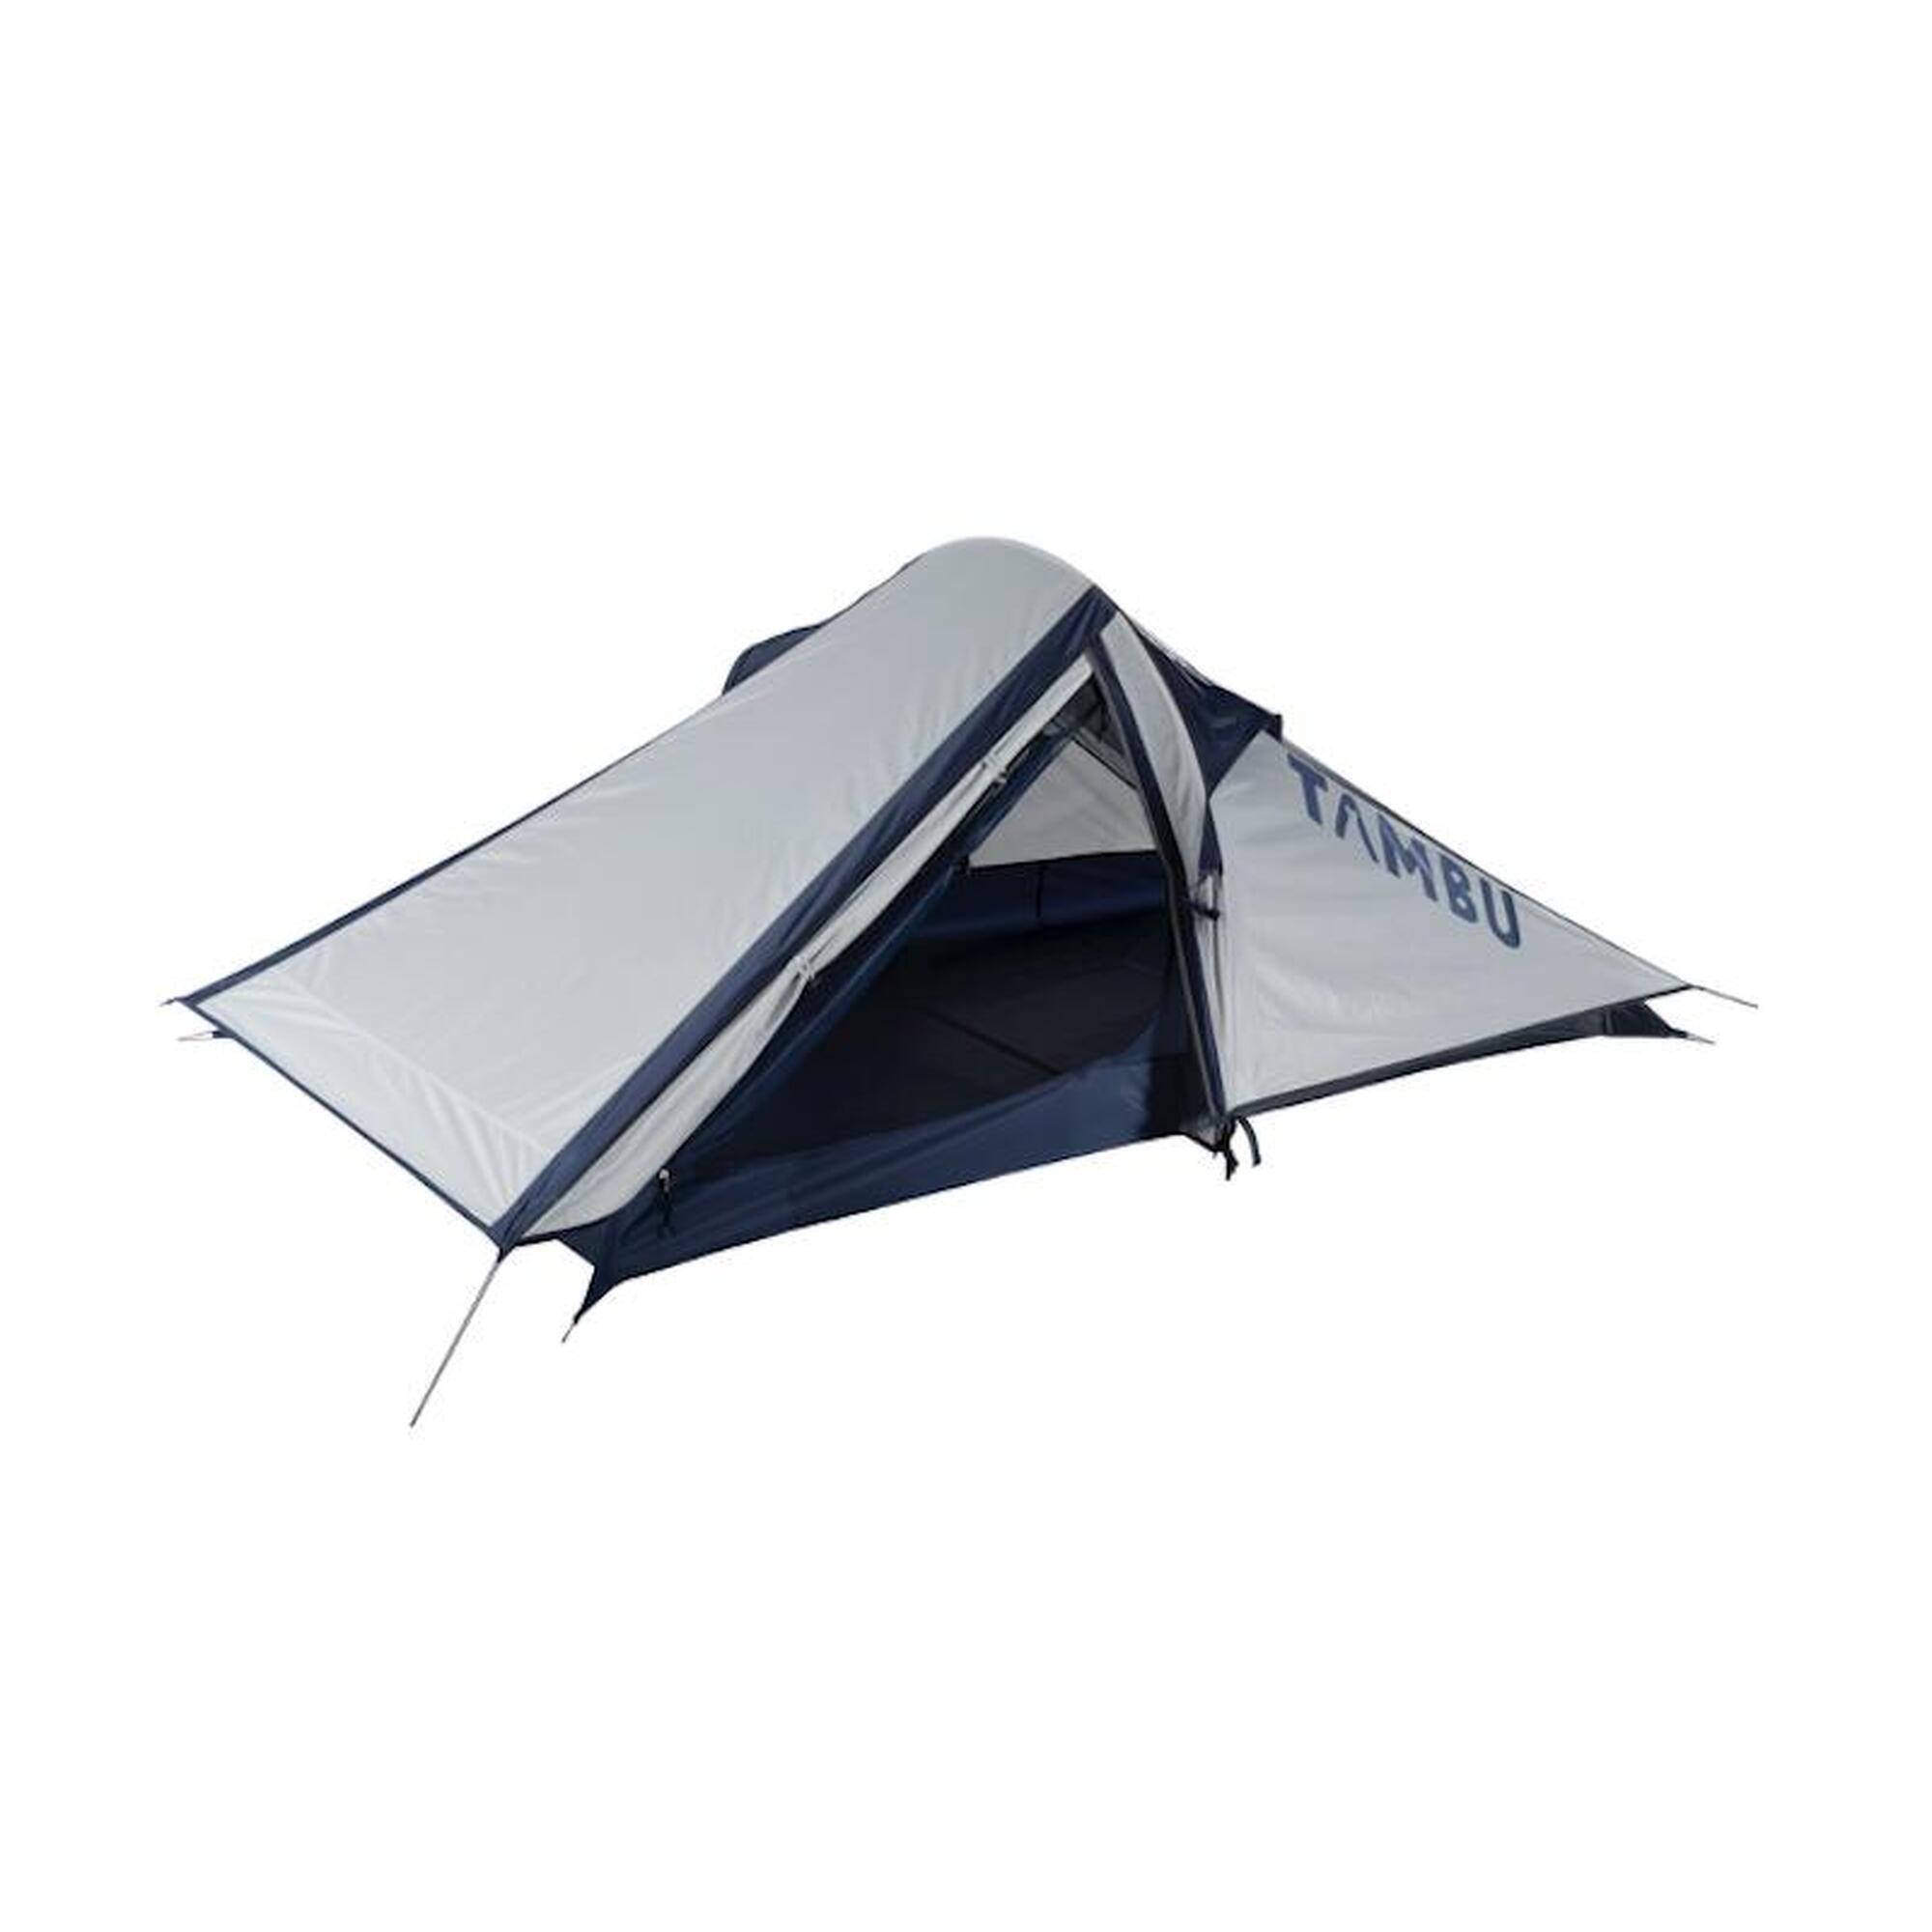 Палатка Tambu легкая треккинговая для 2 человек, светло-серый / синий палатка tambu легкая треккинговая для 2 человек светло серый синий